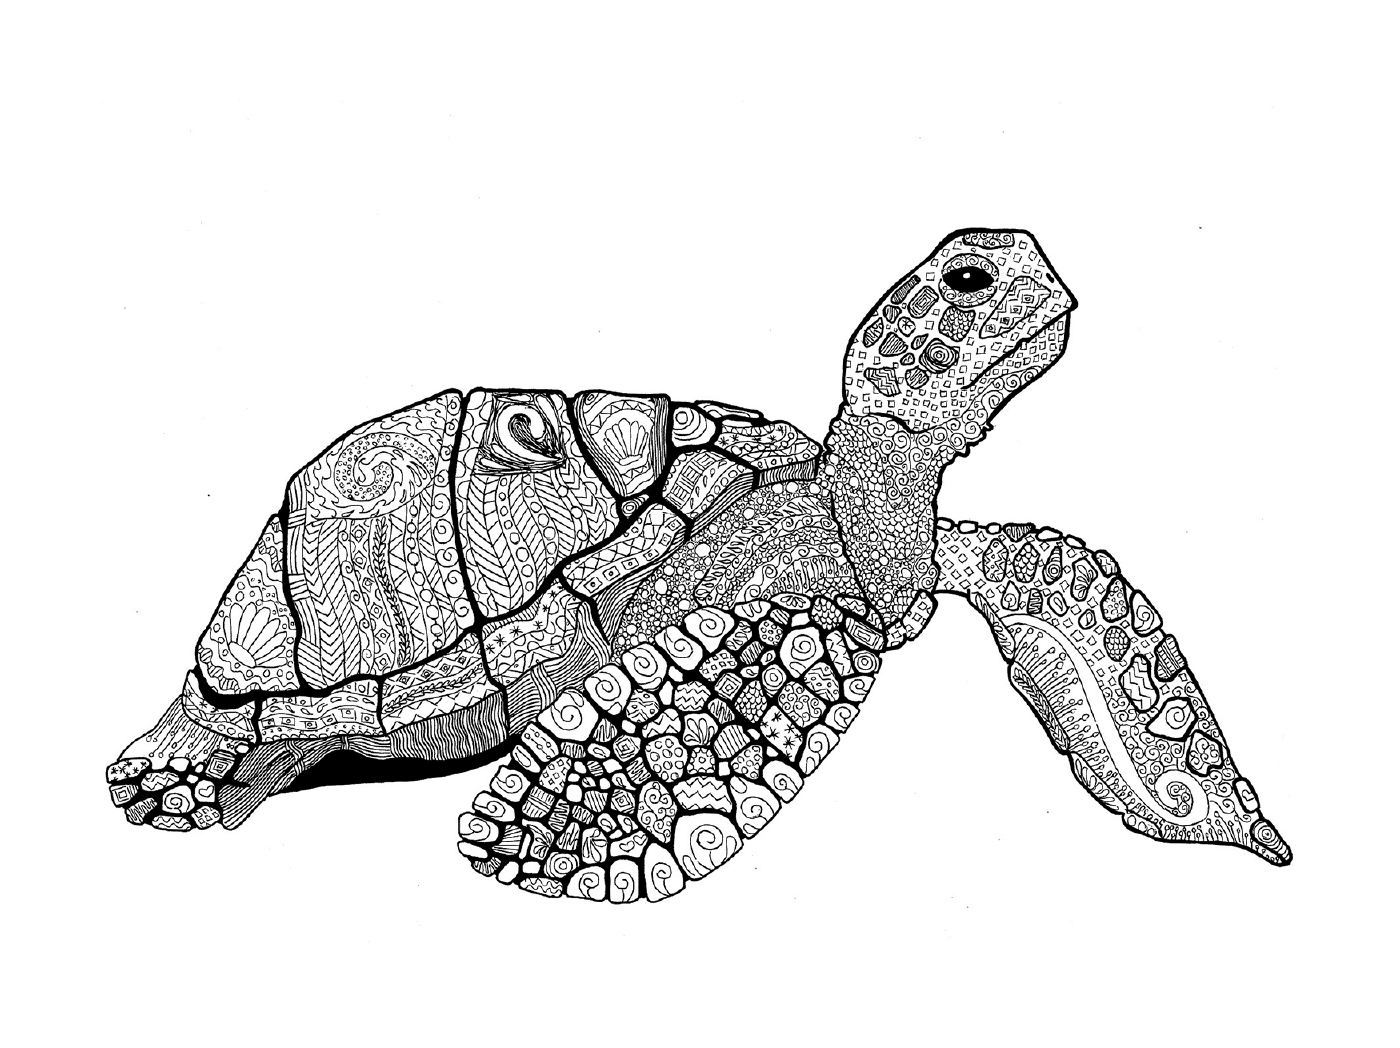  Meeresschildkröte 